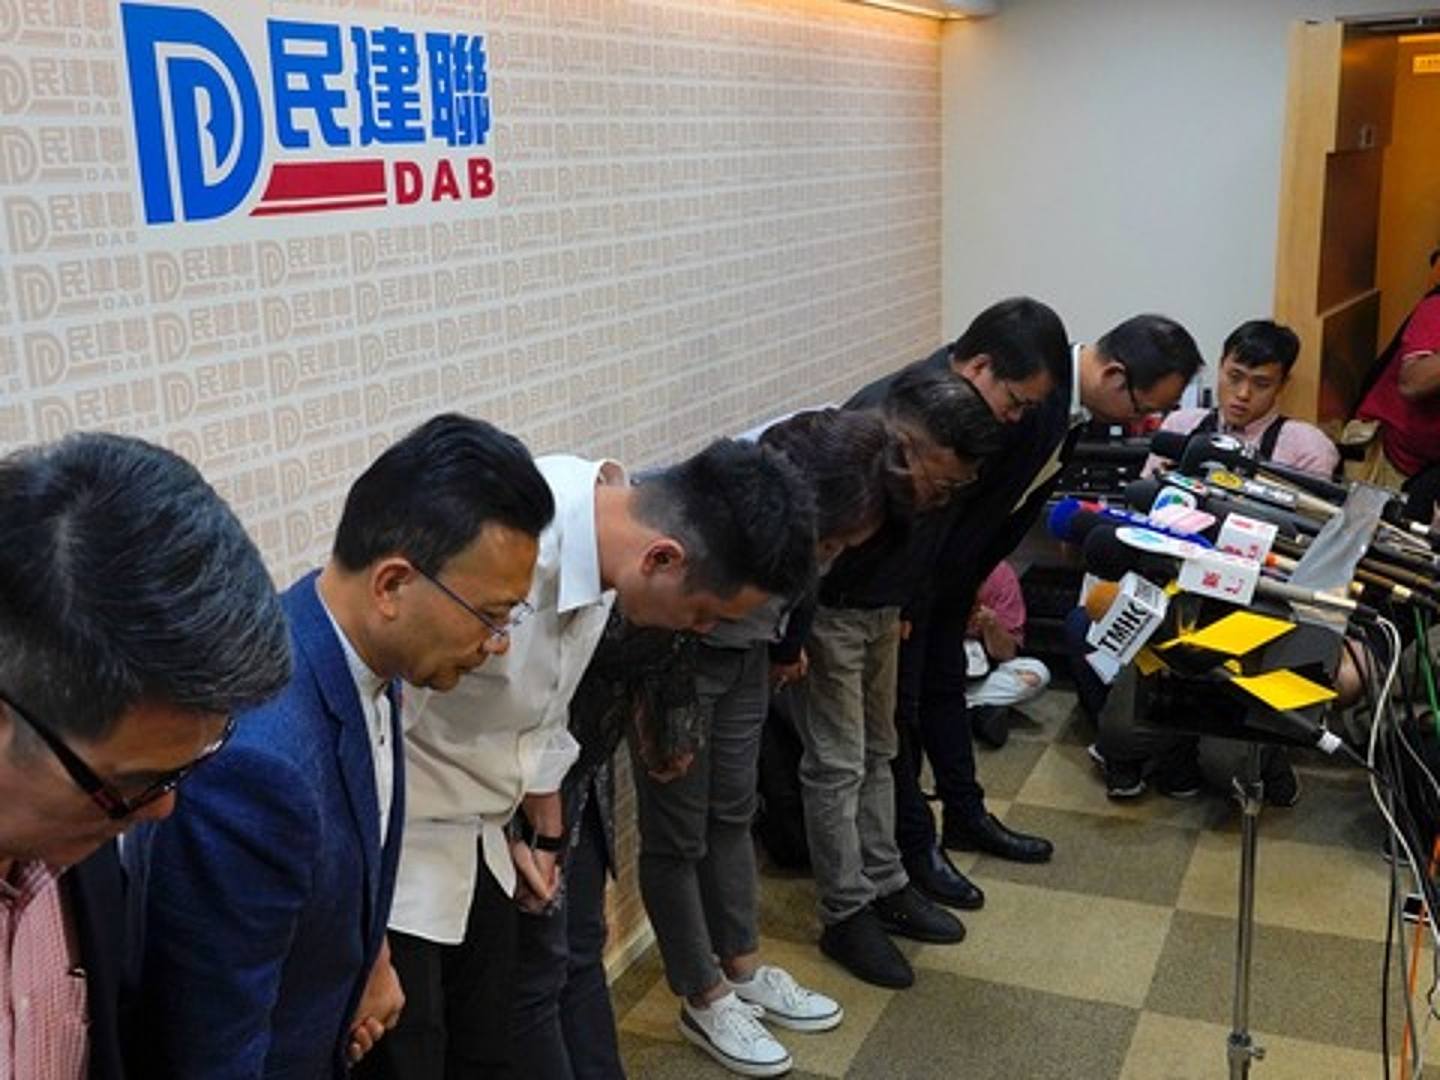 香港建制派在2019年香港區議會選舉中大敗。圖為香港民建聯主席李慧瓊(中)和她的候選人在新聞發佈會上向支持者鞠躬致歉。（美聯社）